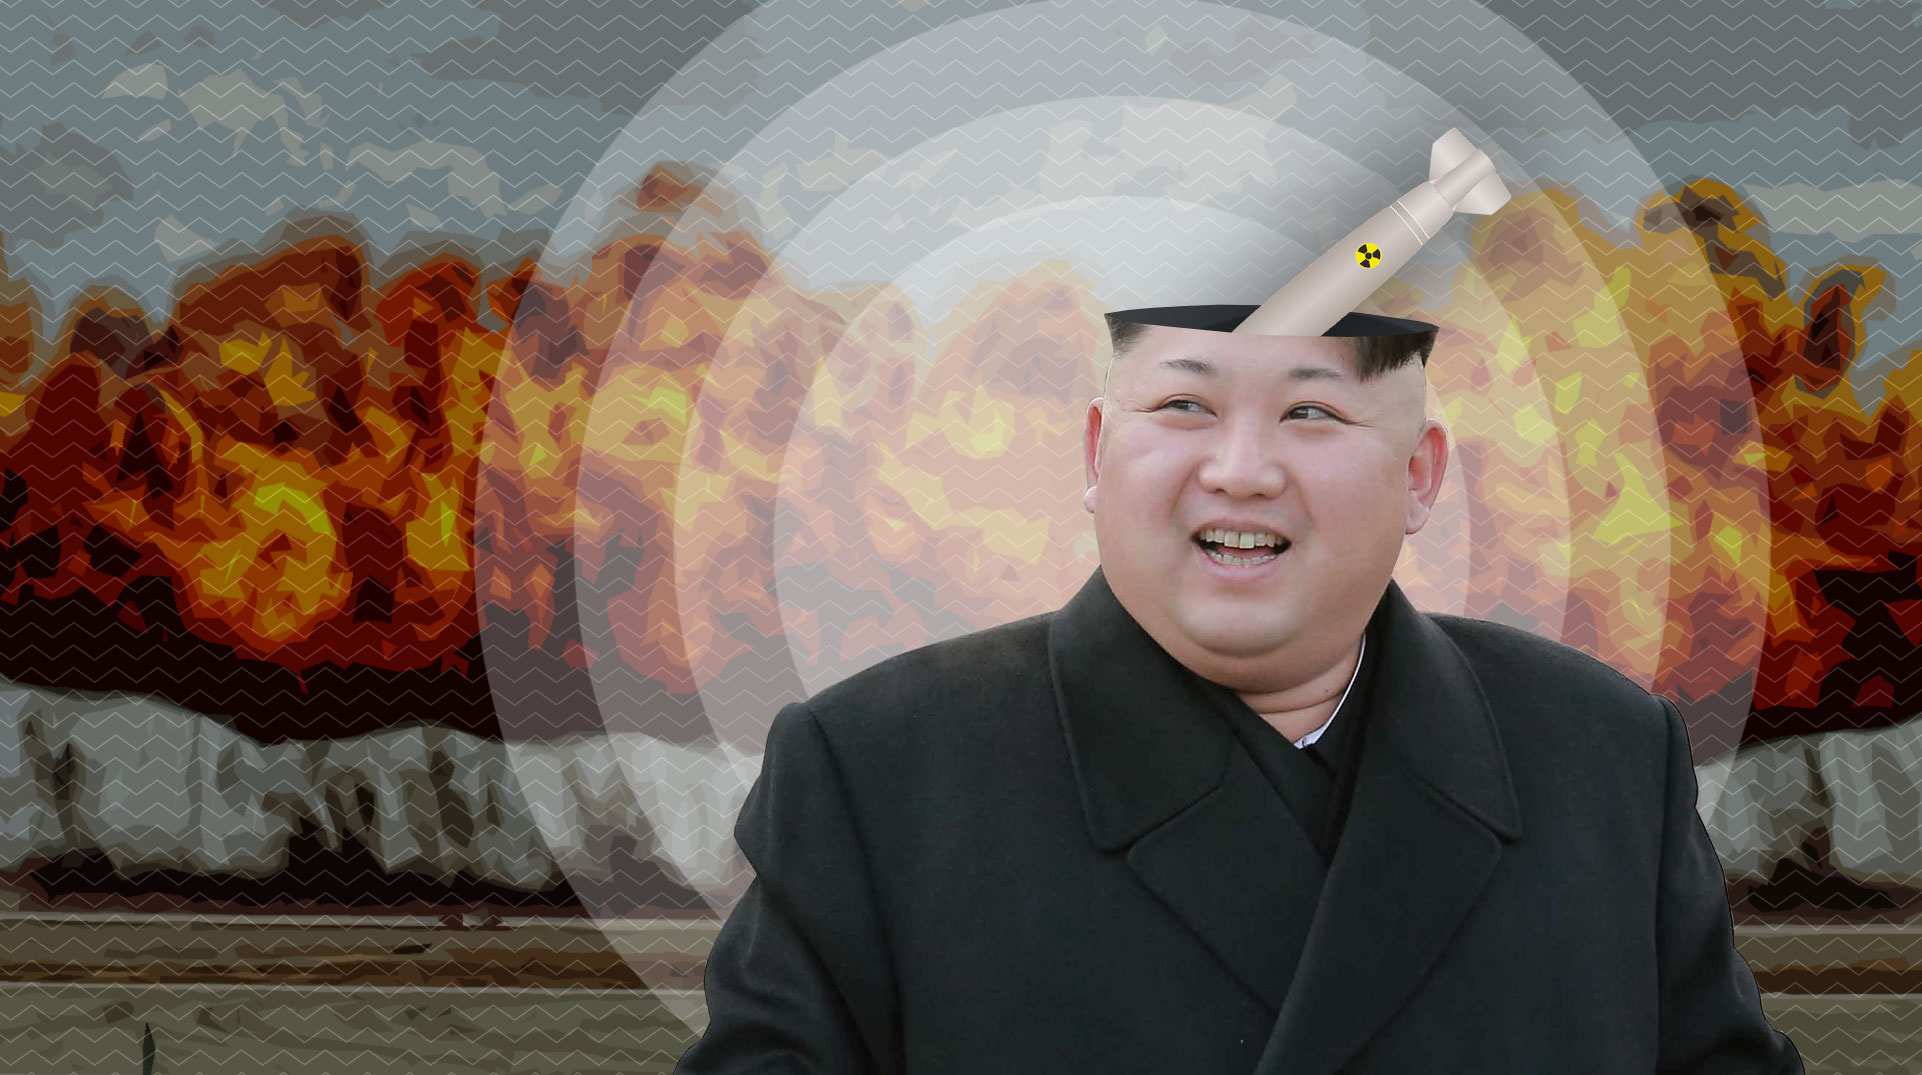 До 1 сентября все граждане США должны покинуть территорию Северной Кореи undefined